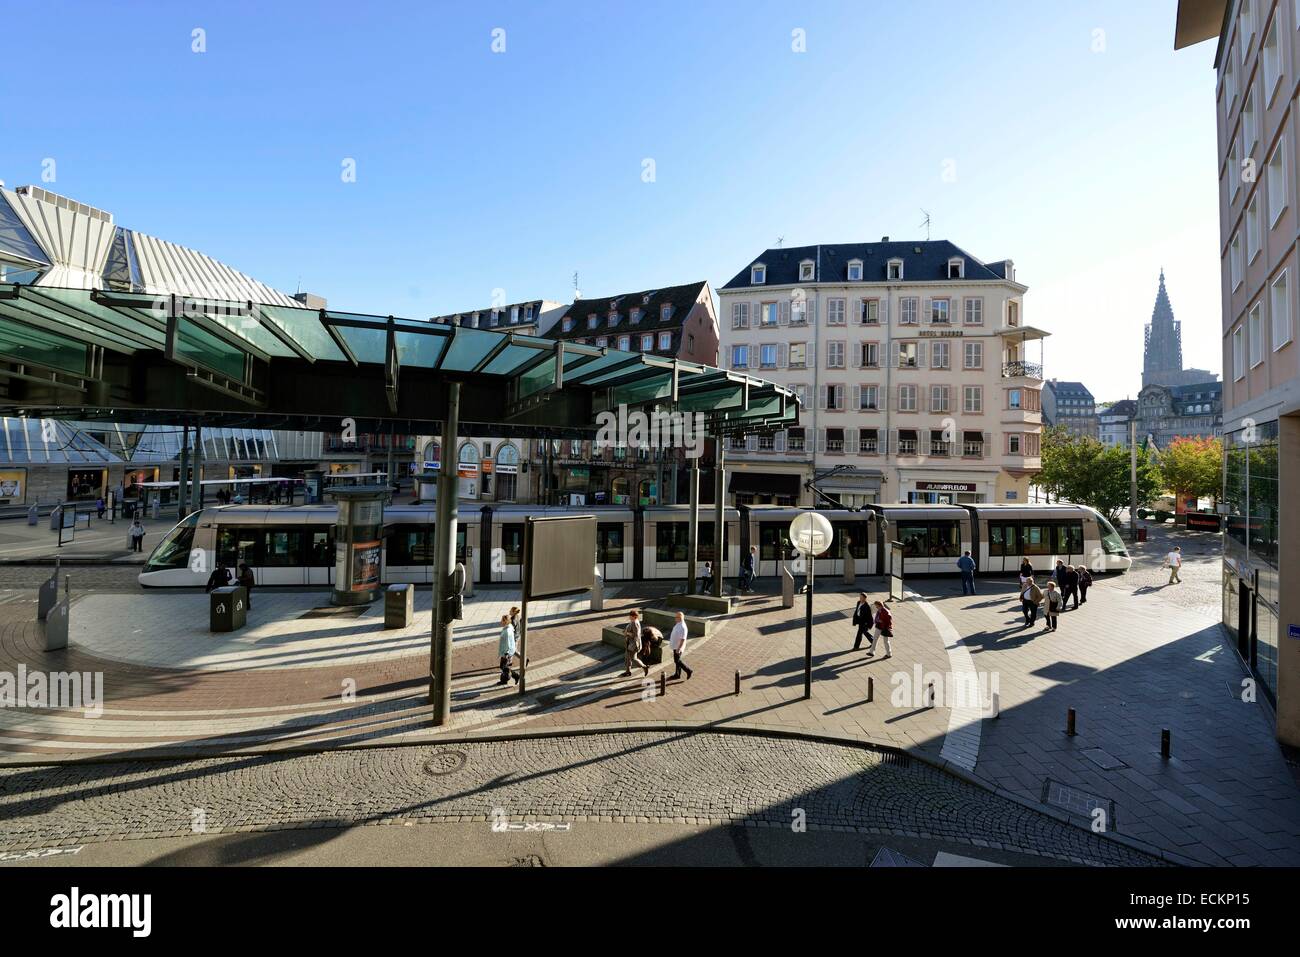 La France, Bas Rhin, Strasbourg, vieille ville classée au Patrimoine Mondial de l'UNESCO, la place de l'Homme de Fer (Iron Man) Banque D'Images